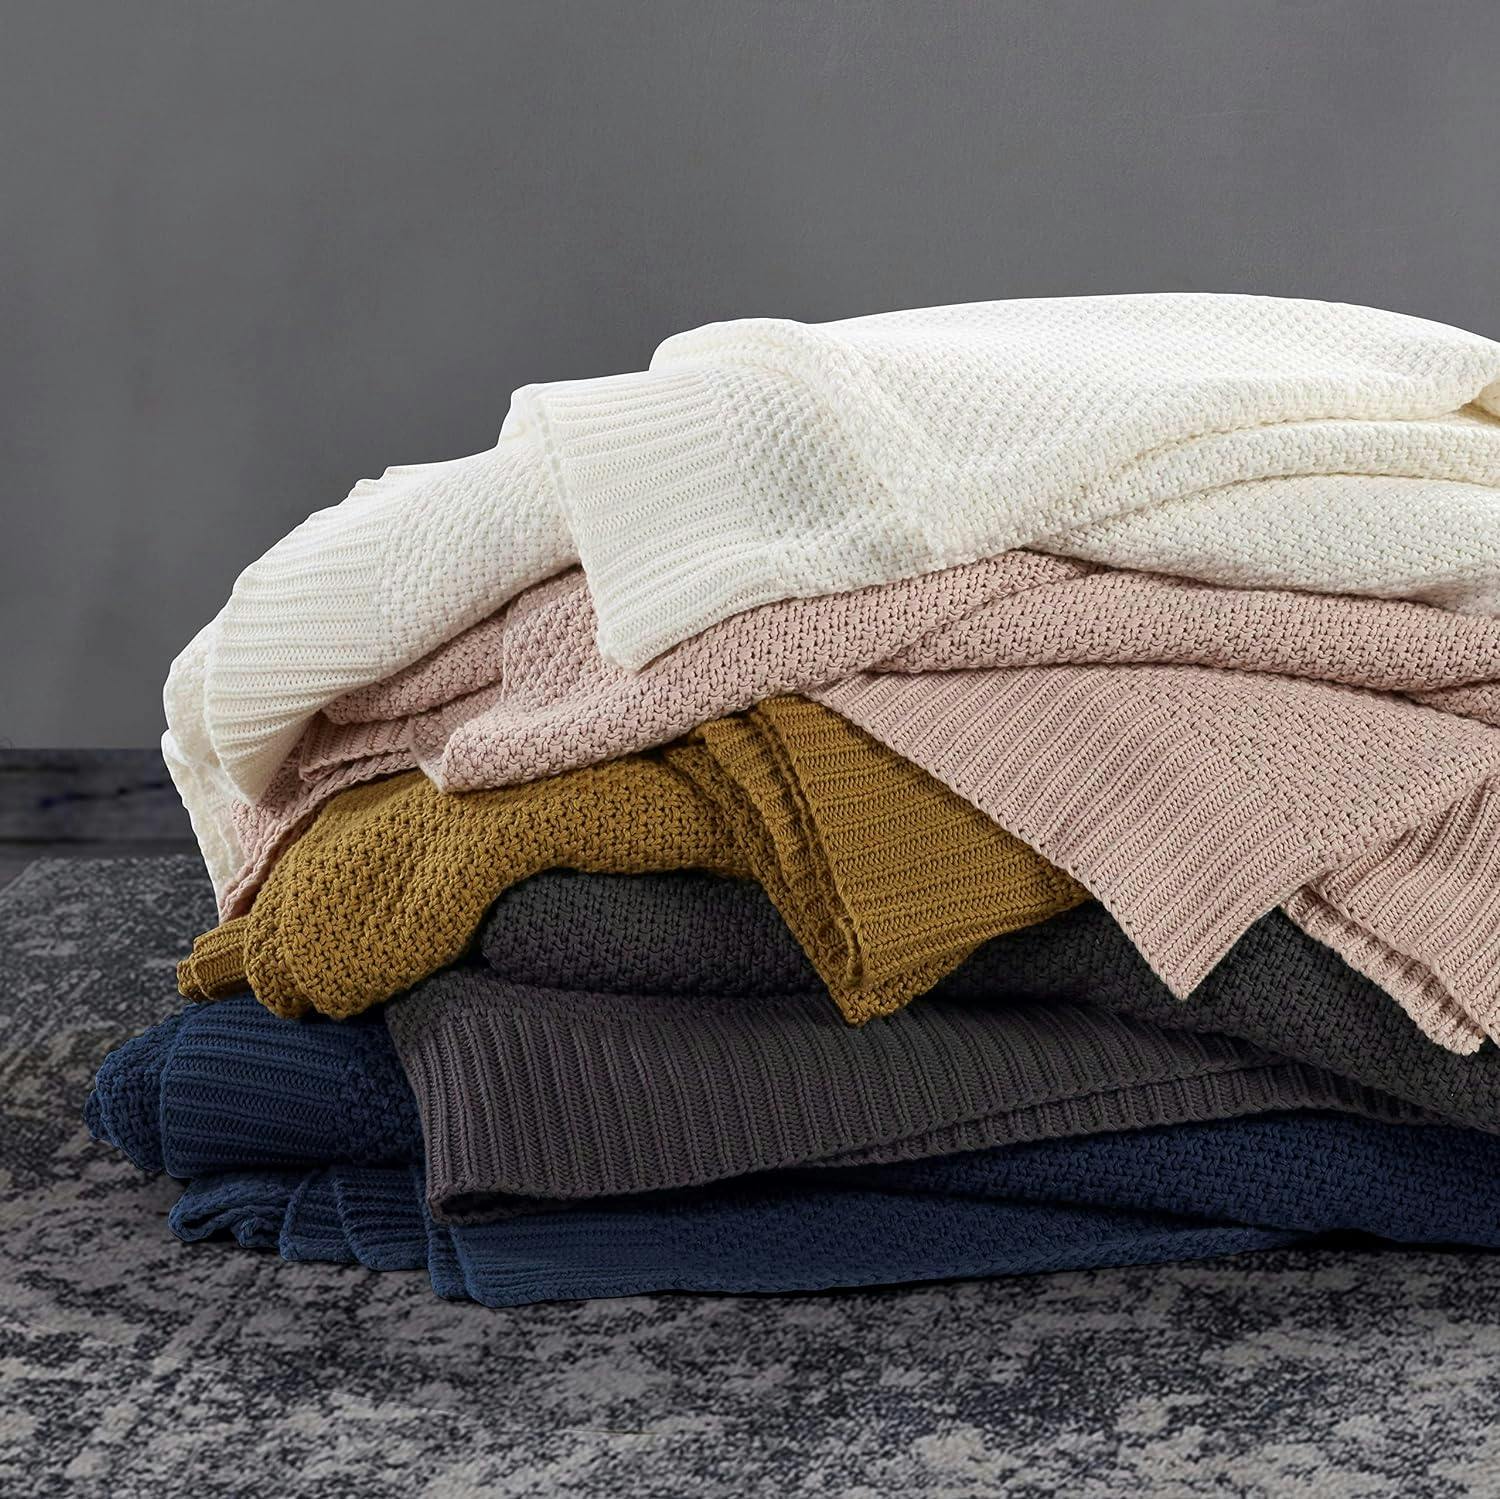 Luxurious Navy Cotton Knit Throw Blanket, 50x60 inch, Cozy Farmhouse Style